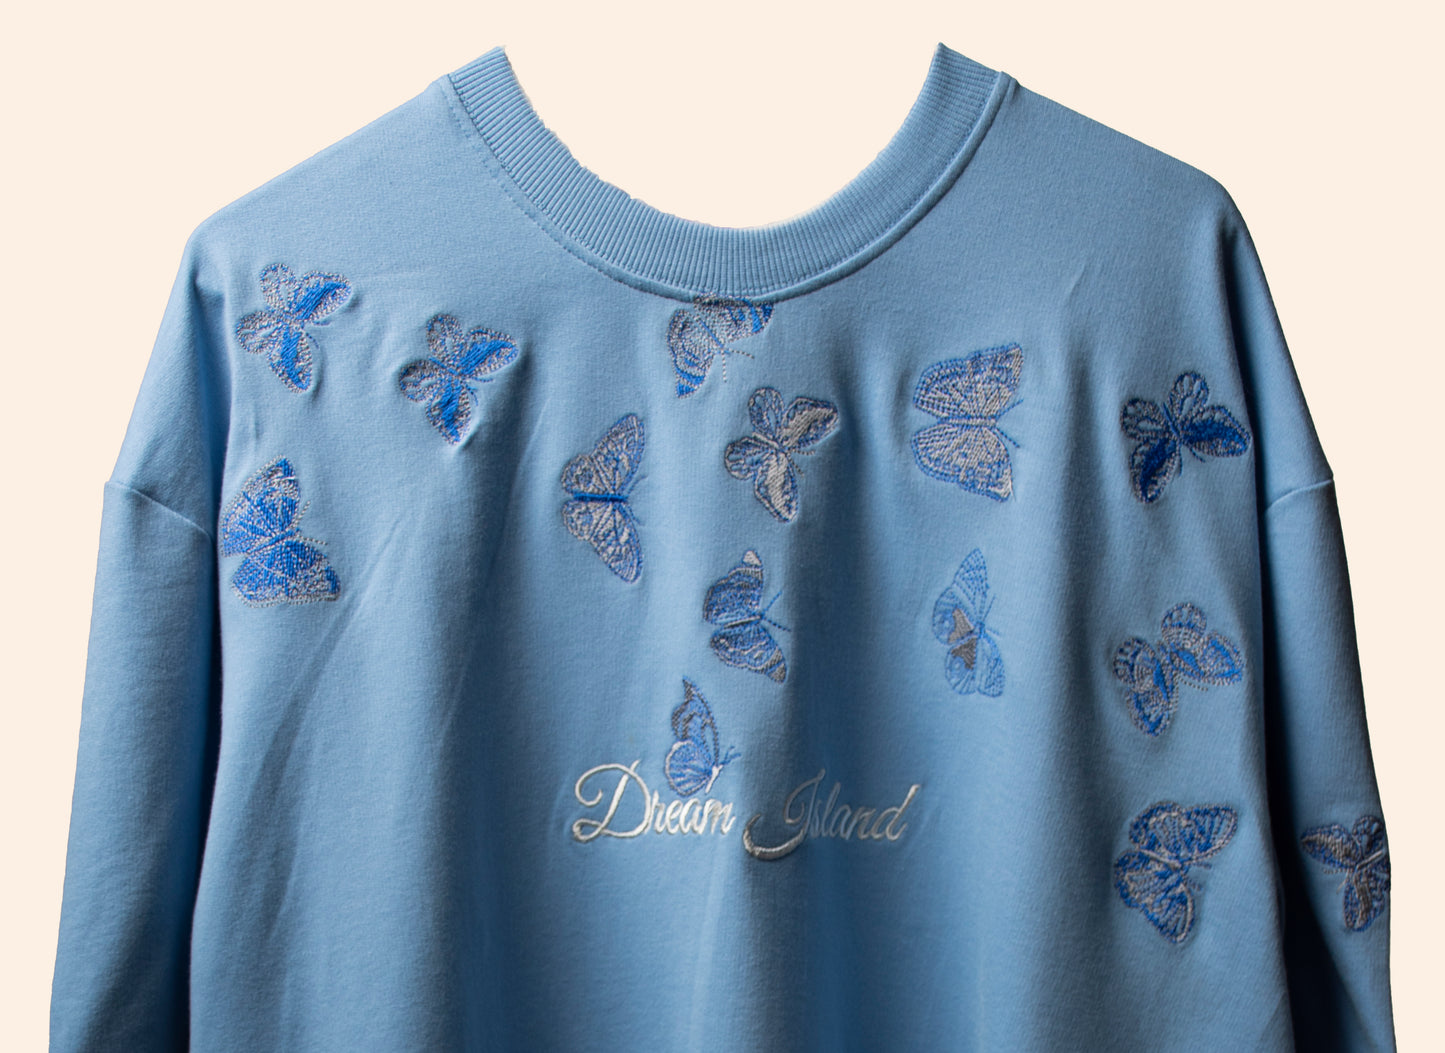 Heavenly blue Butterflies T-shirt